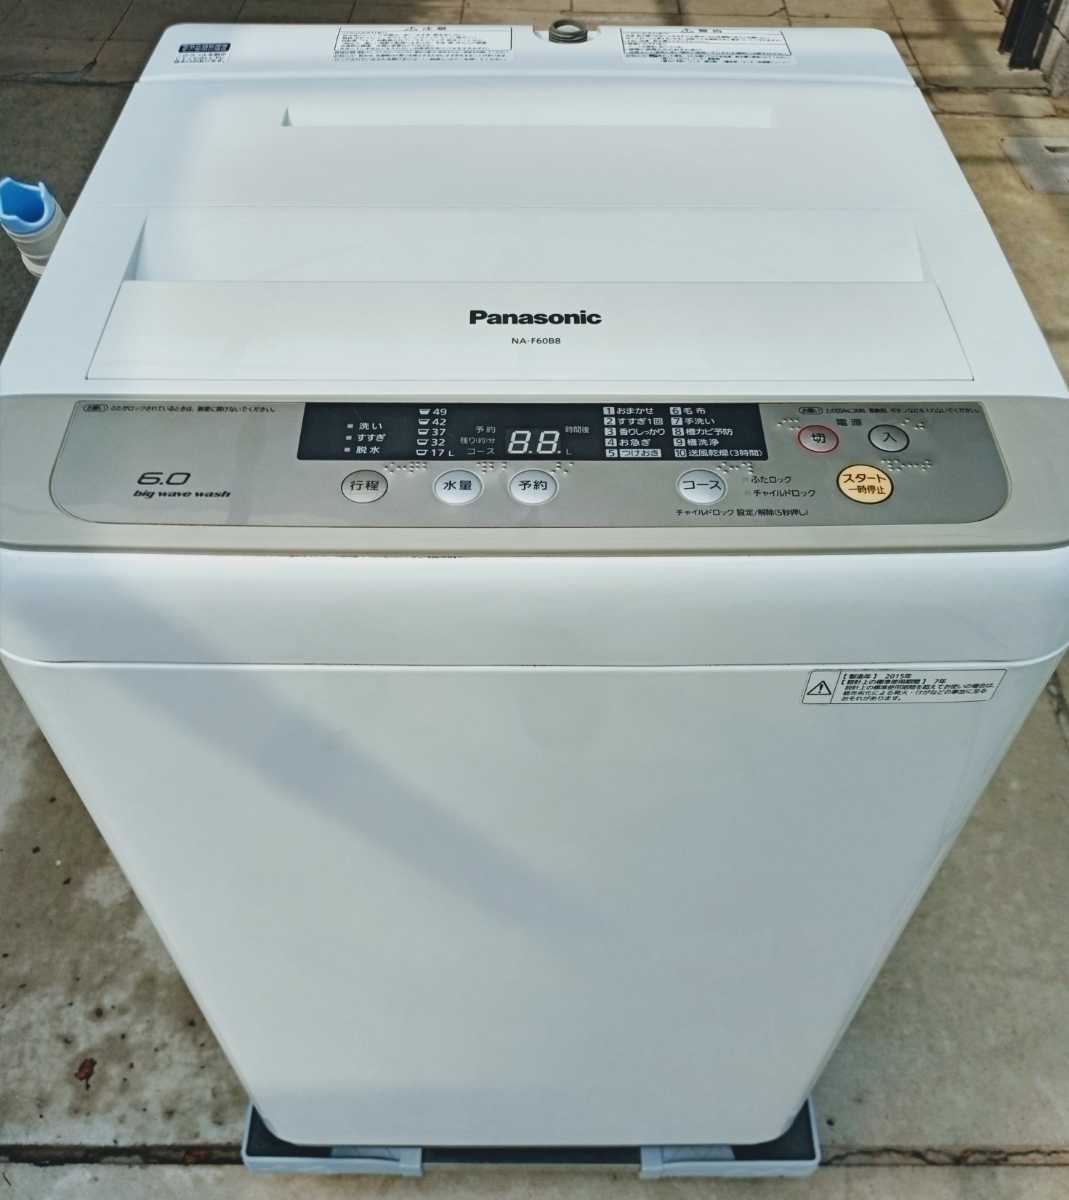 8976円 爆買い送料無料 Panasonic 12年製 7kg 全自動洗濯機 分解洗浄